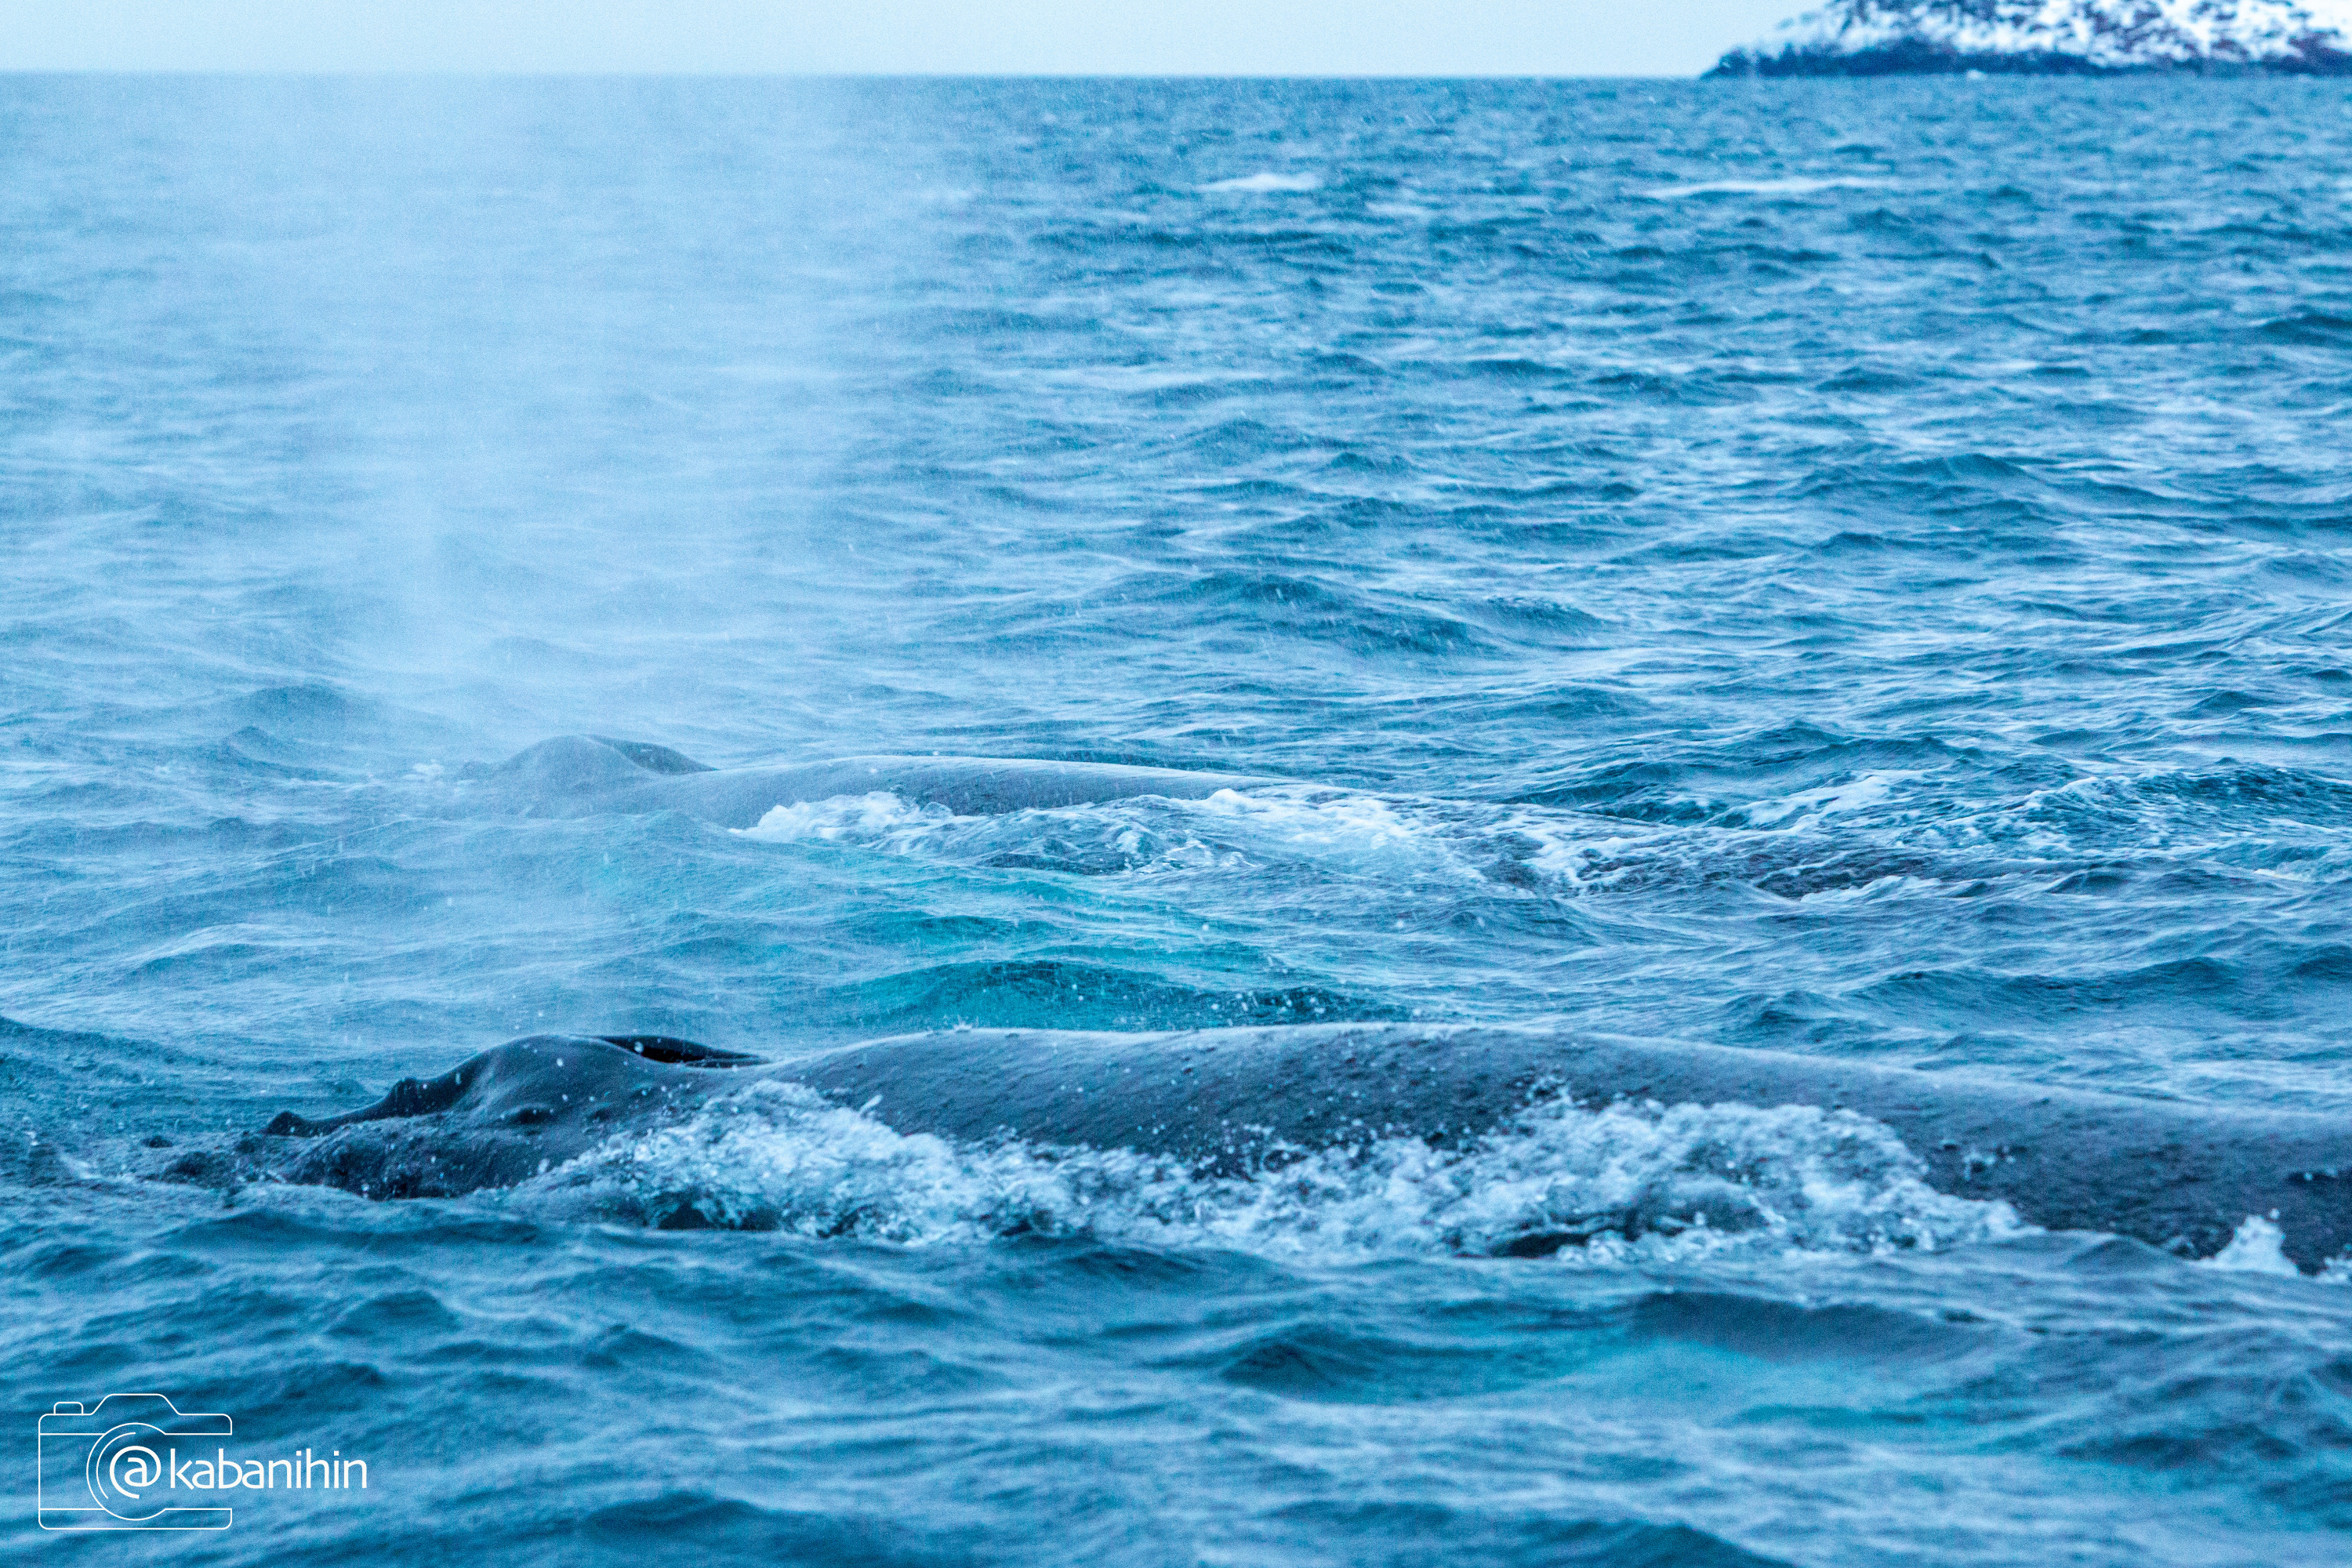 Алексей Кабанихин рассказывает, что всем удалось «поймать» китов: и хвосты, и бока